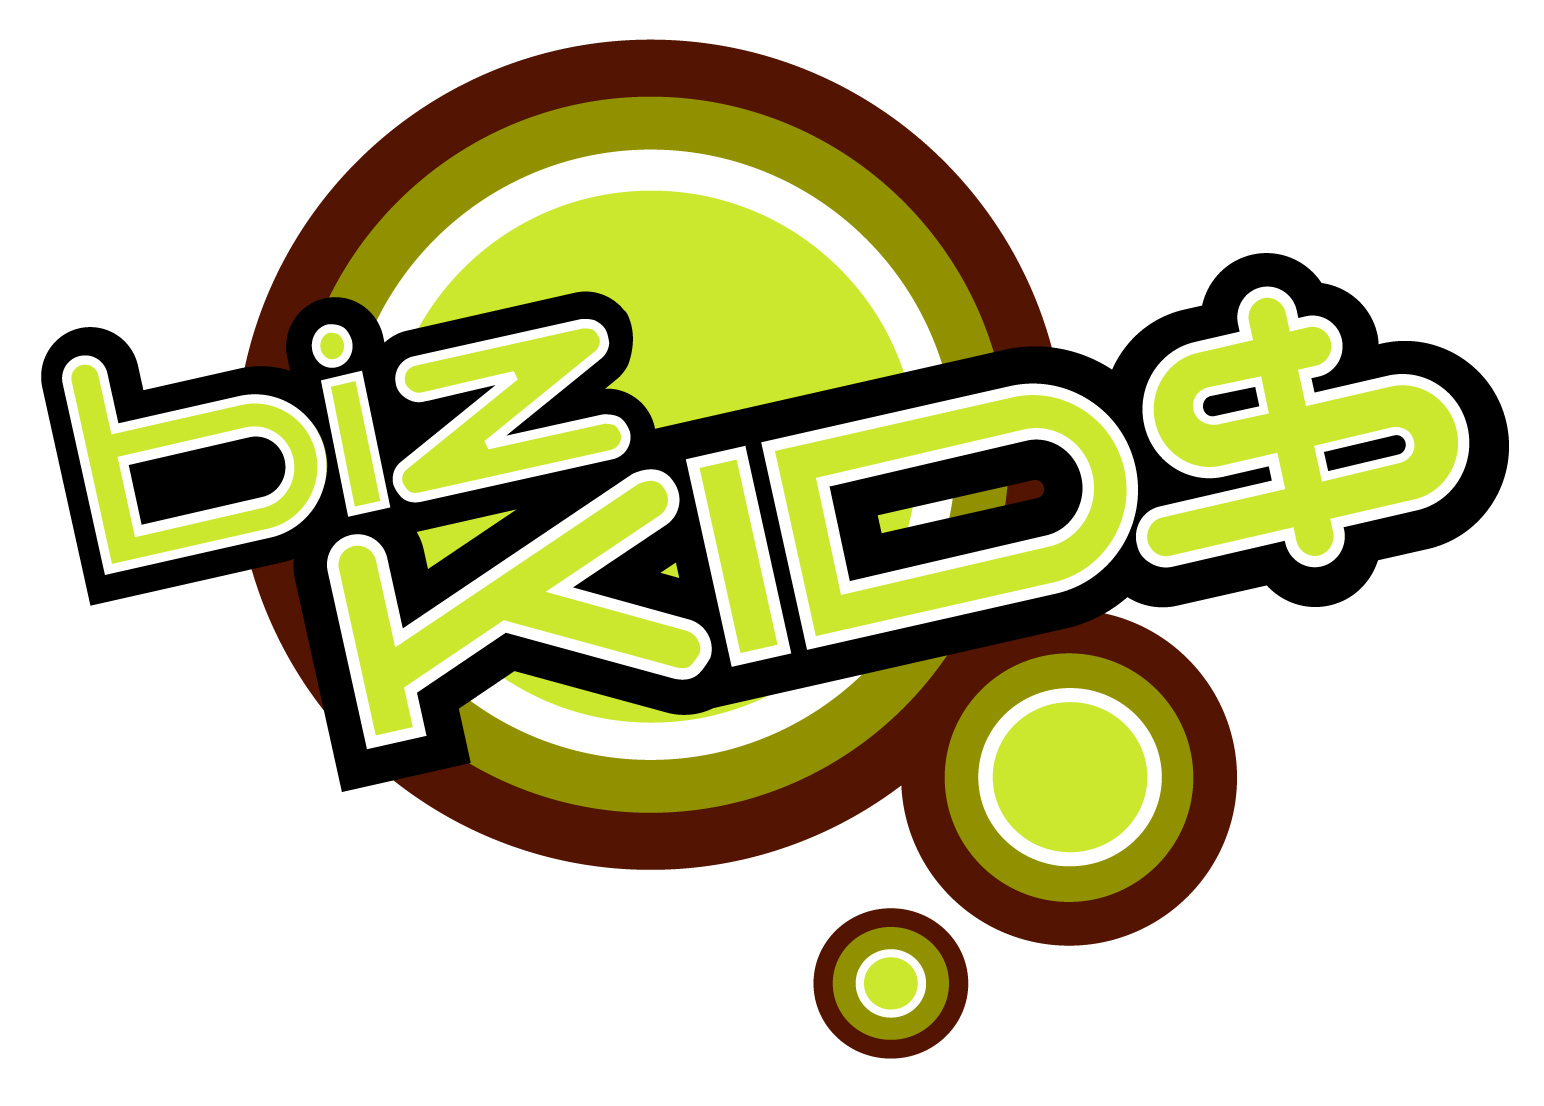 BizKid$ website